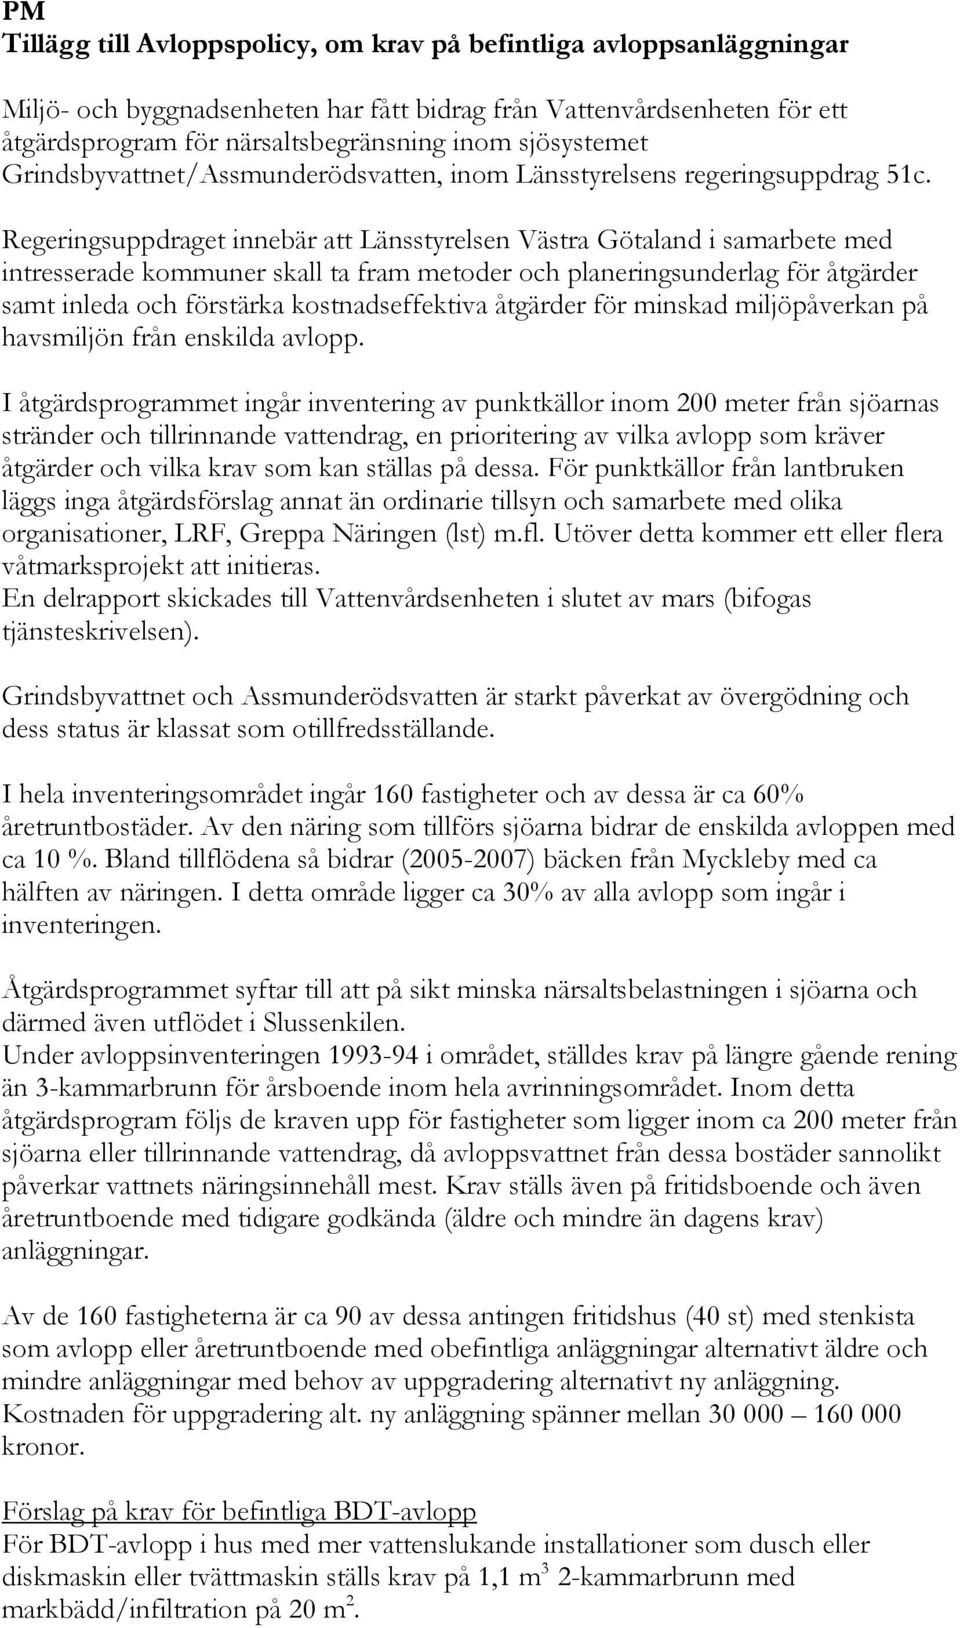 Regeringsuppdraget innebär att Länsstyrelsen Västra Götaland i samarbete med intresserade kommuner skall ta fram metoder och planeringsunderlag för åtgärder samt inleda och förstärka